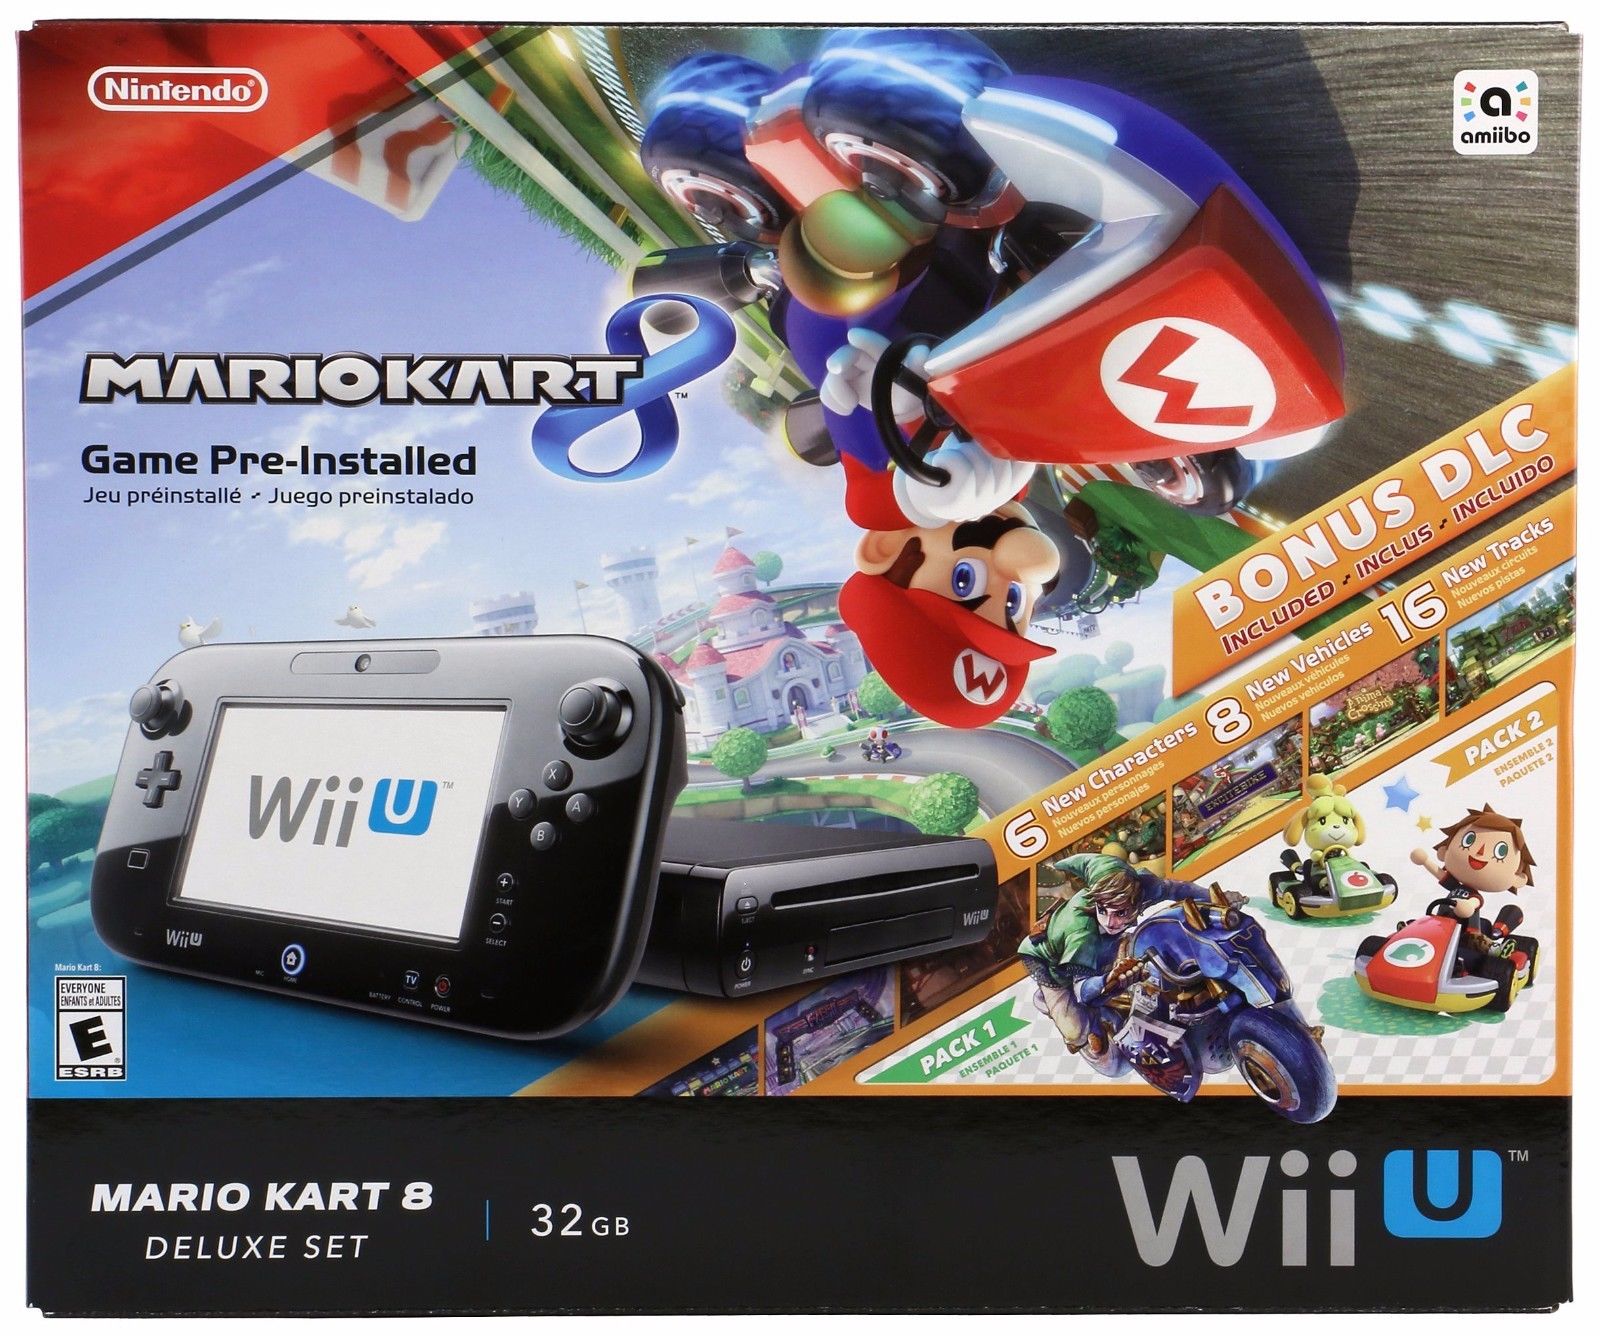 Console Nintendo Wiiu 32gb Bundle Mario Kart Com Dlc R 150000 Em Mercado Livre 3917